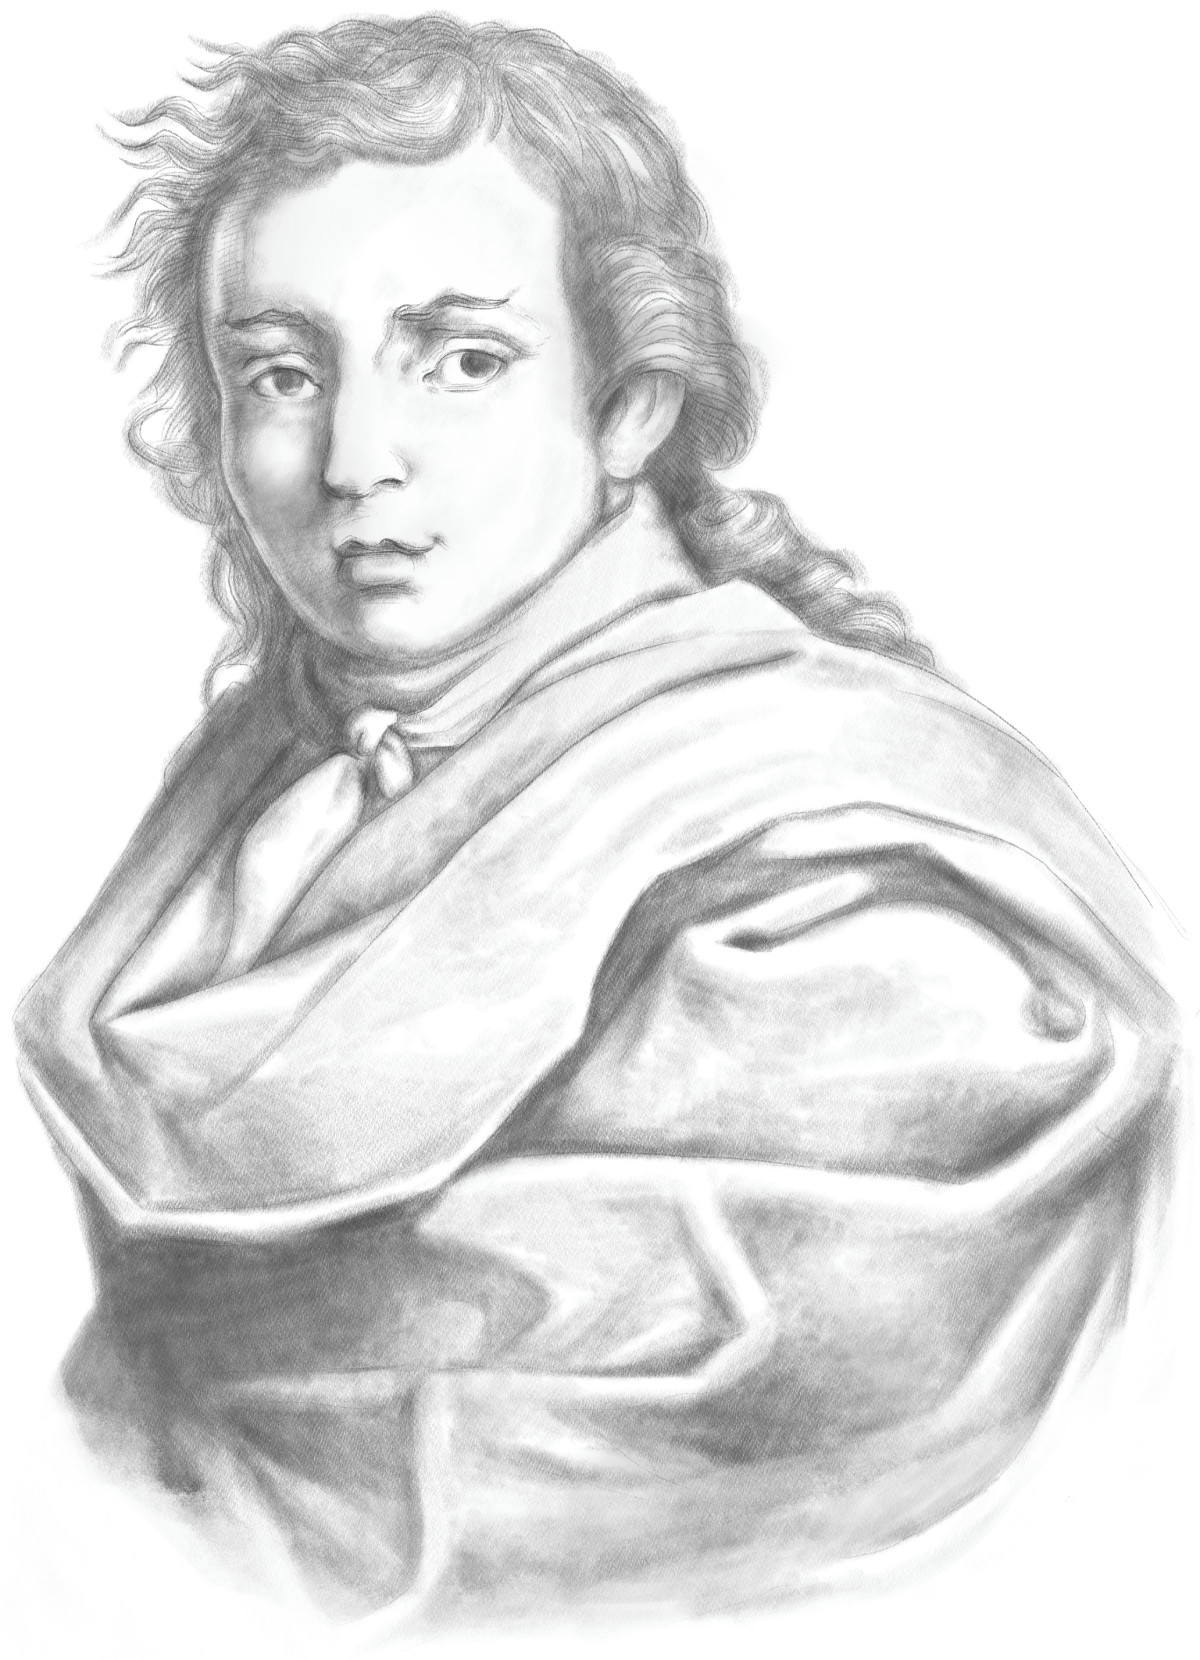 Gian Giacomo Cavalli